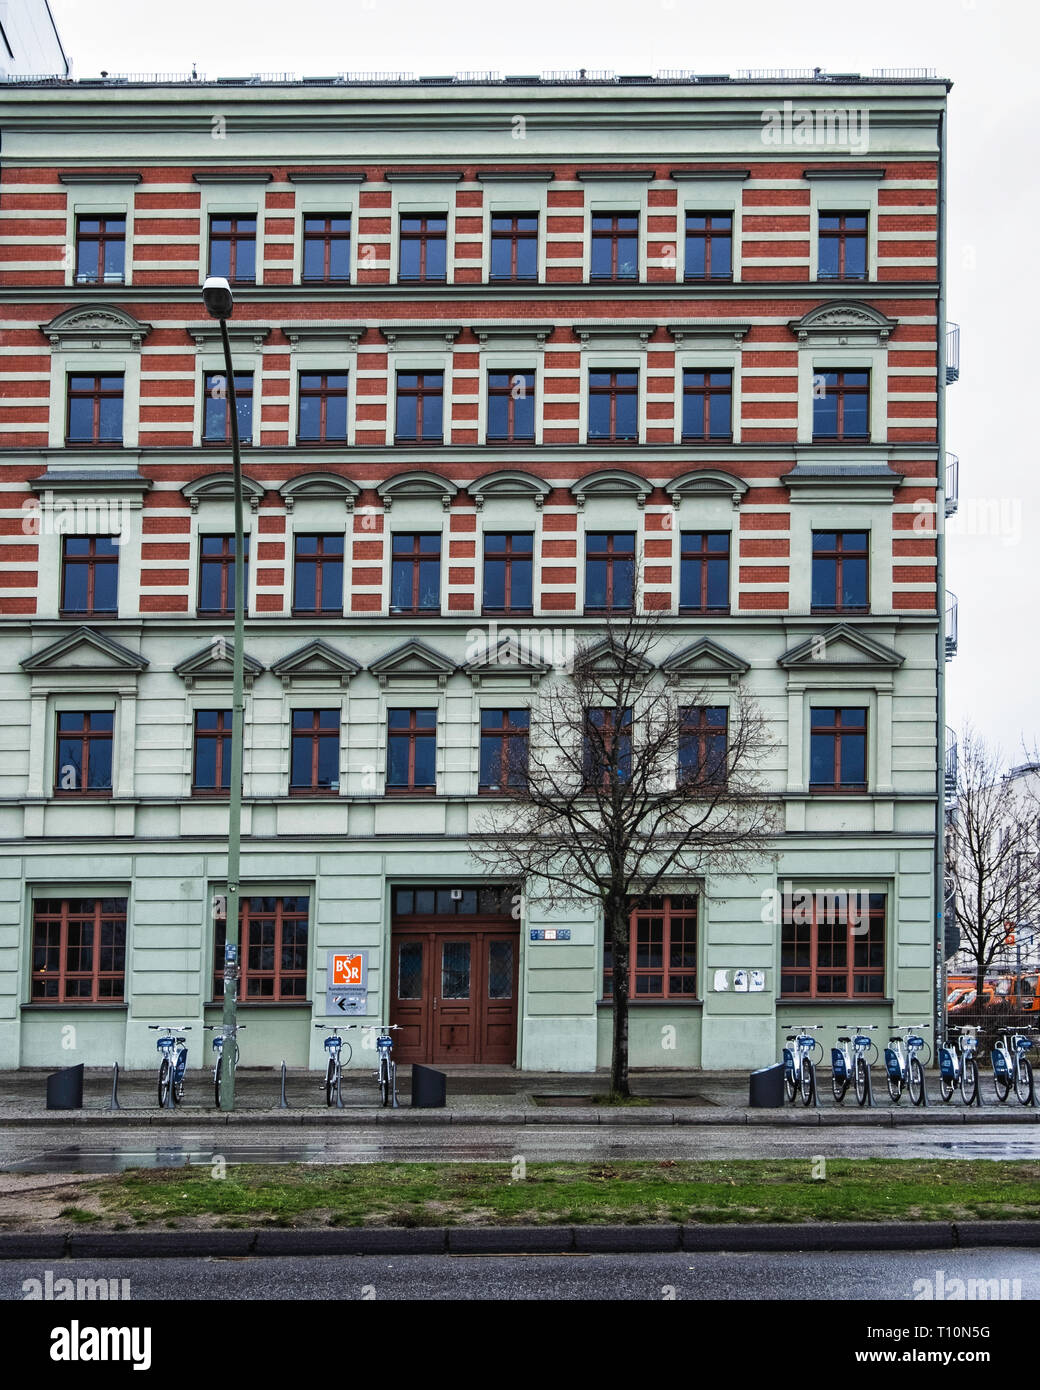 Berlin-Friedrichshain die Berliner Stadtreinigung (BSR), City Reinigung Firma Gebäude. Außen & Fassade. Stockfoto